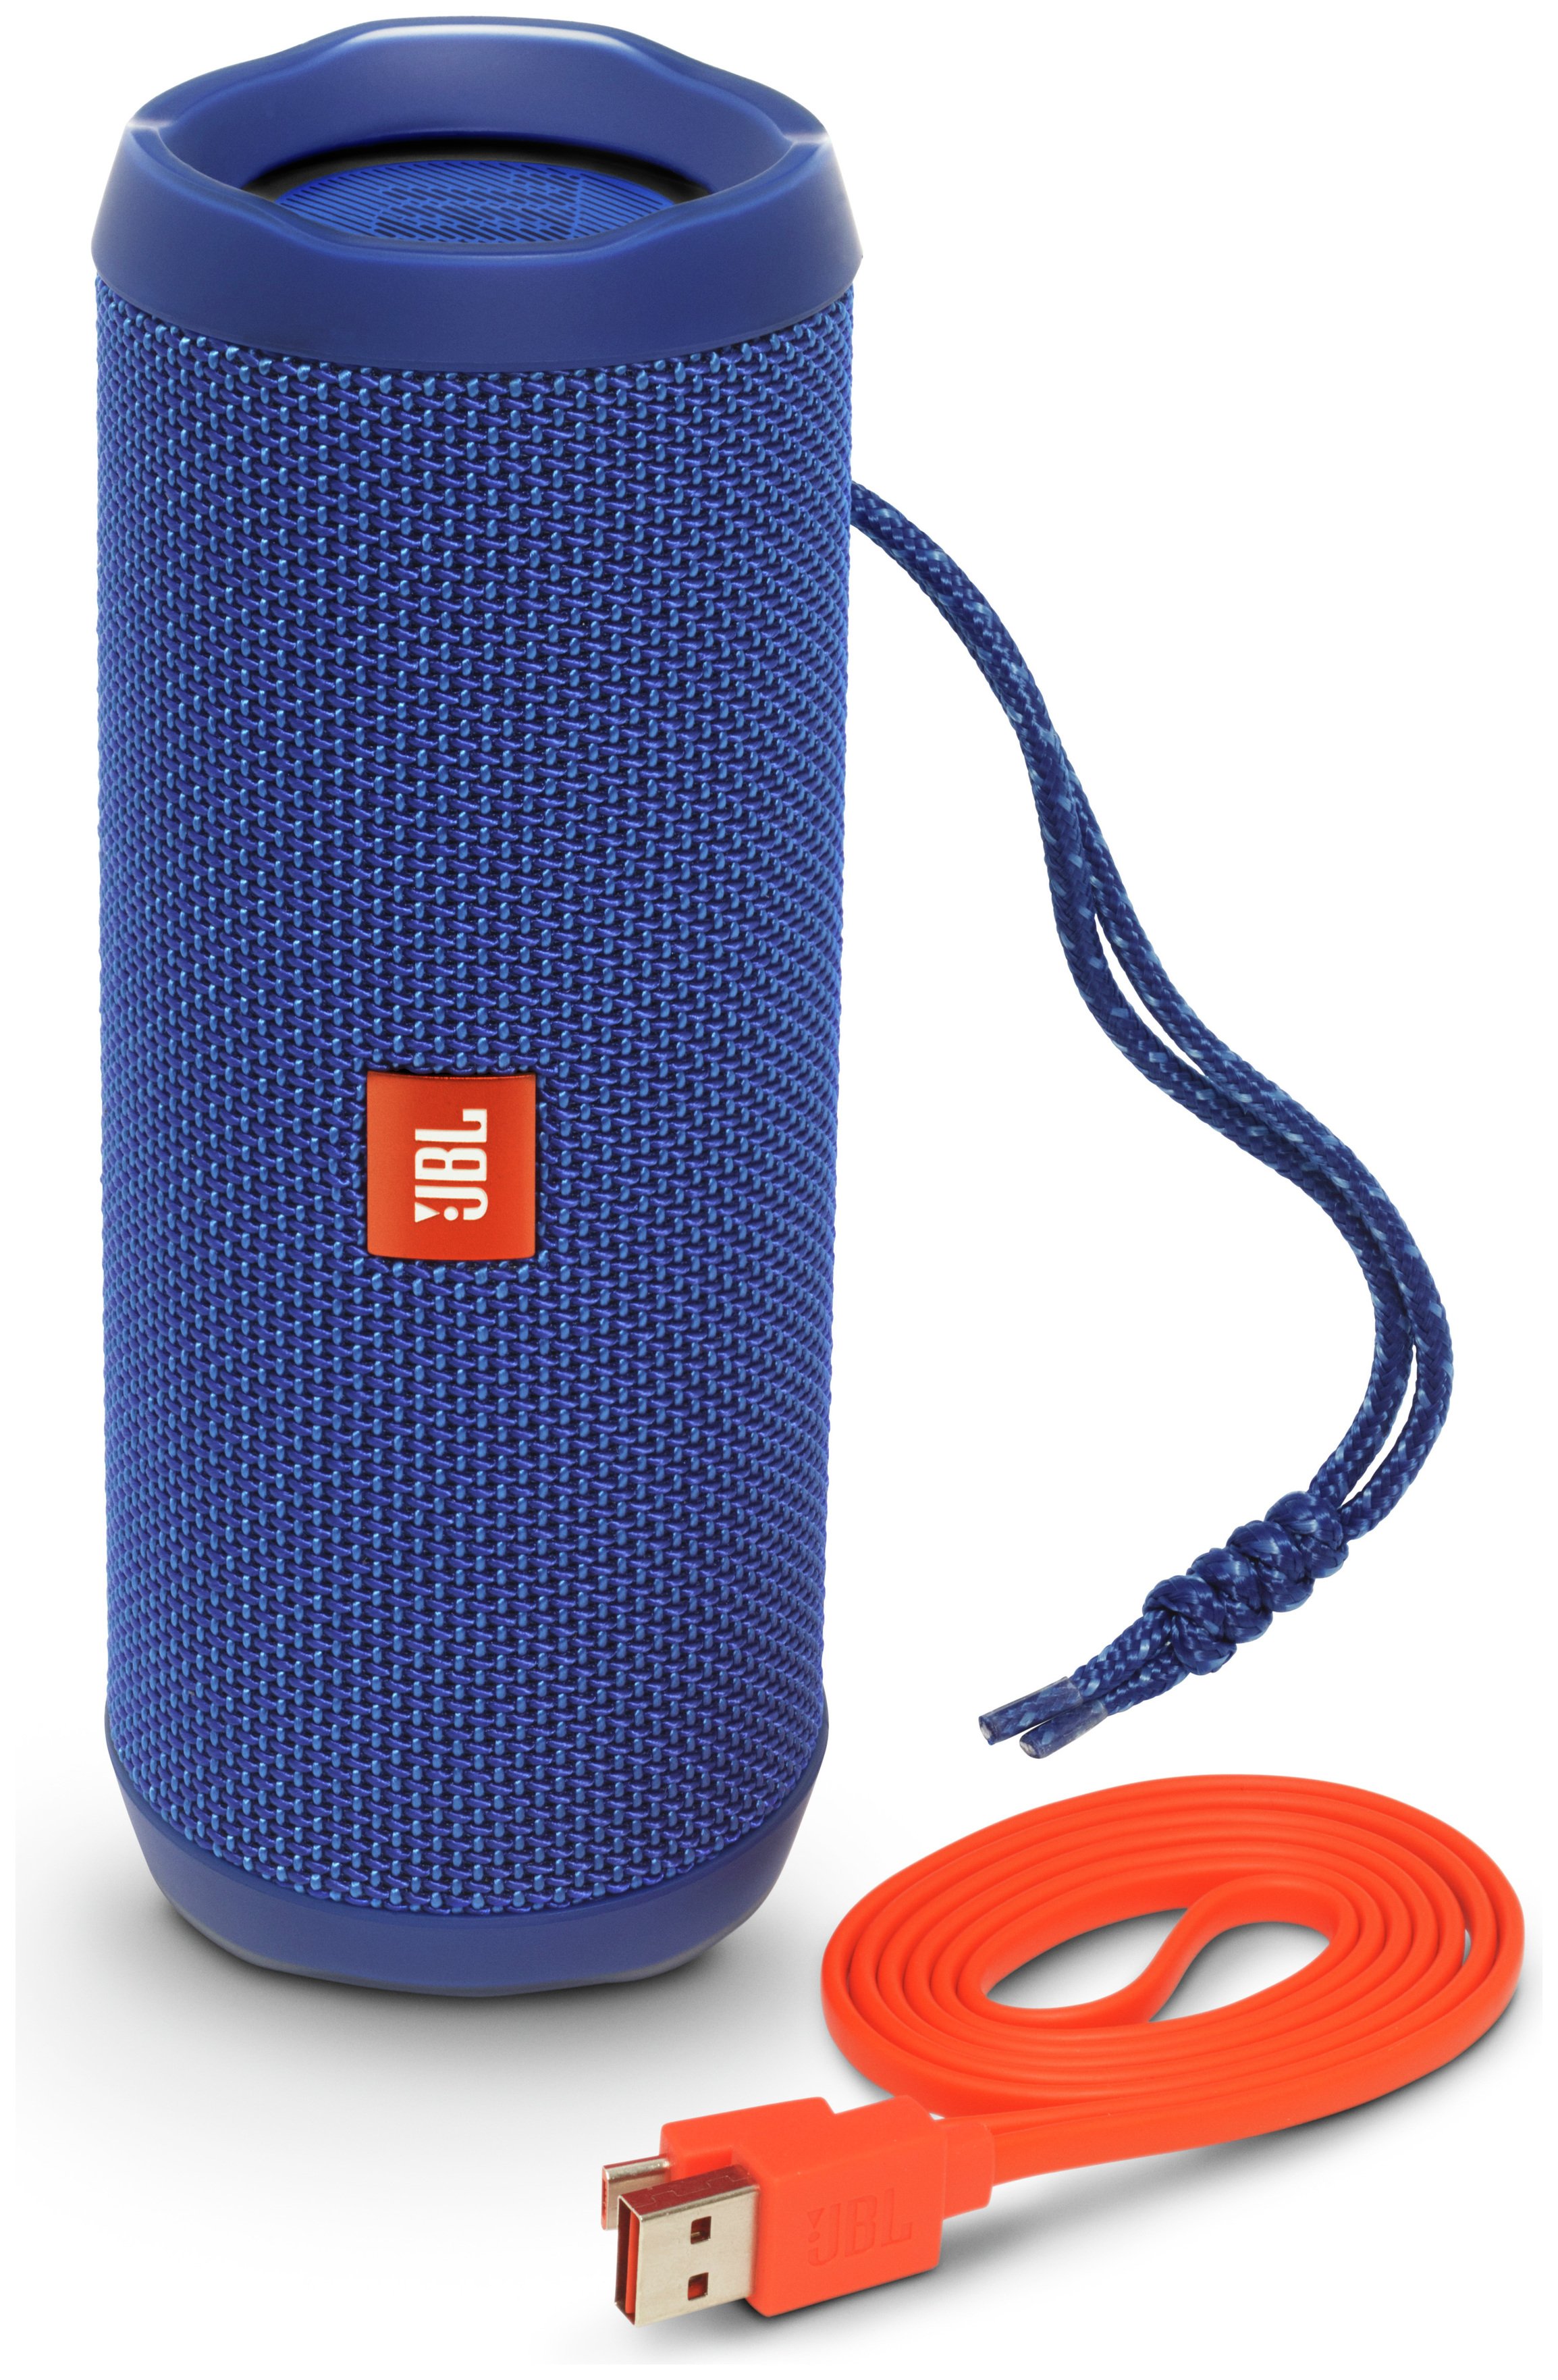 JBL Flip 4 Portable Wireless Speaker - Blue